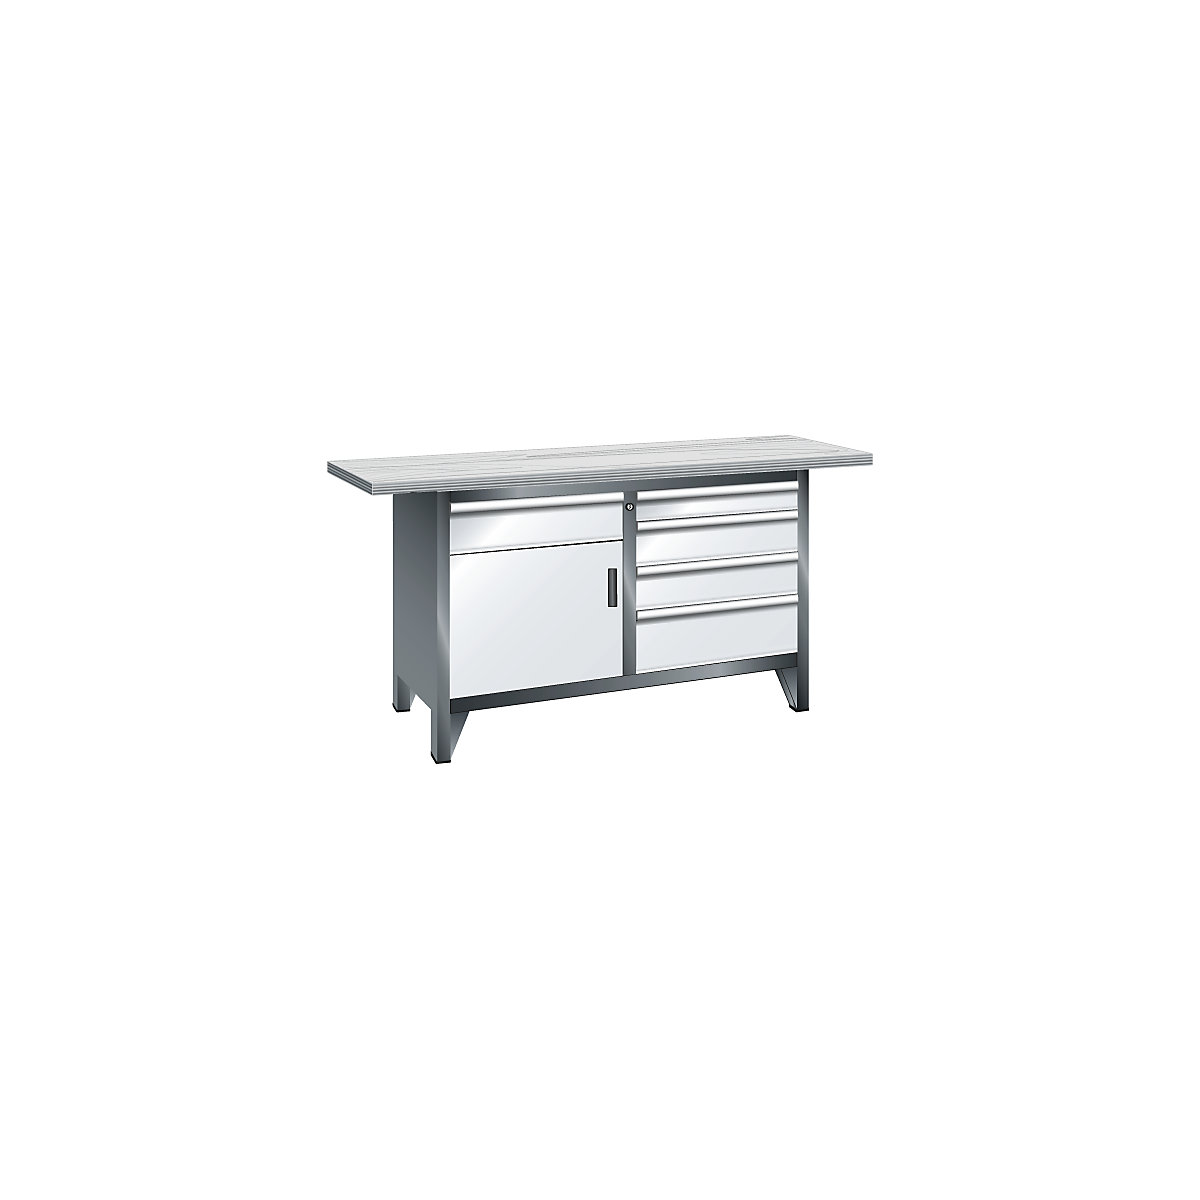 Workbench width 1500 mm, frame construction – LISTA, 1 shelf, 5 drawers, 1 door, body light grey, front light blue-7